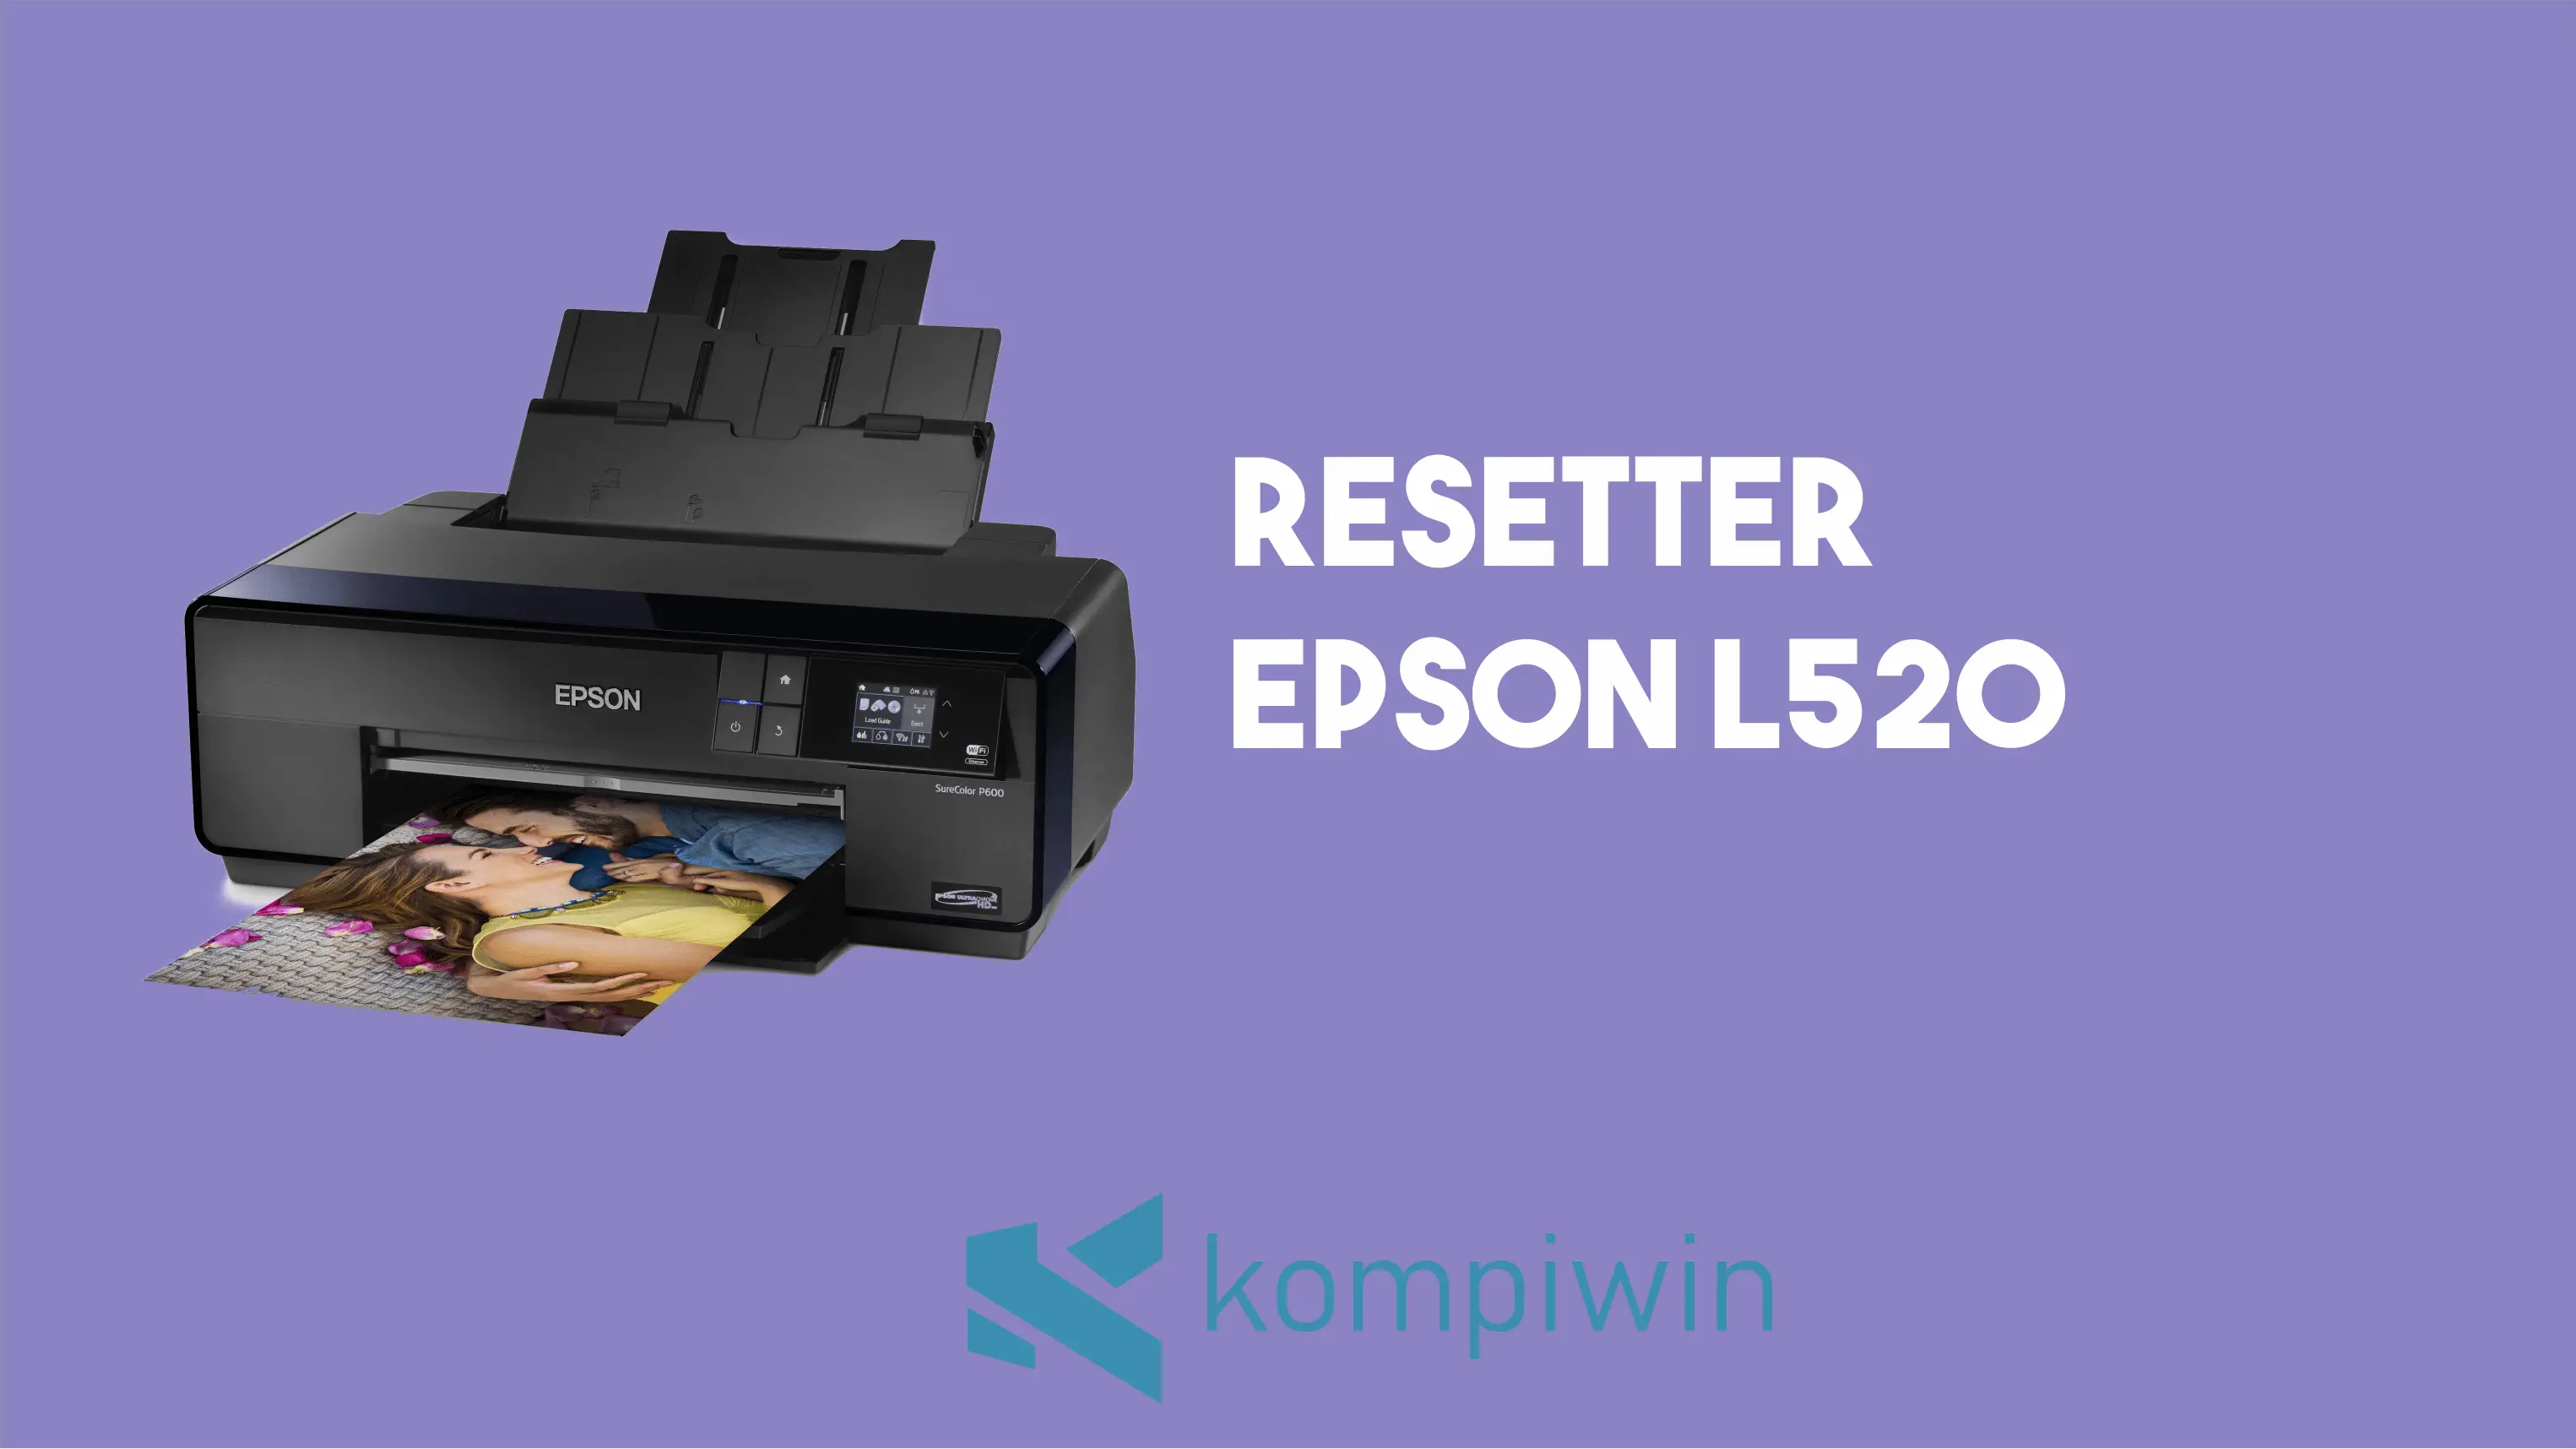 Resetter Epson L520